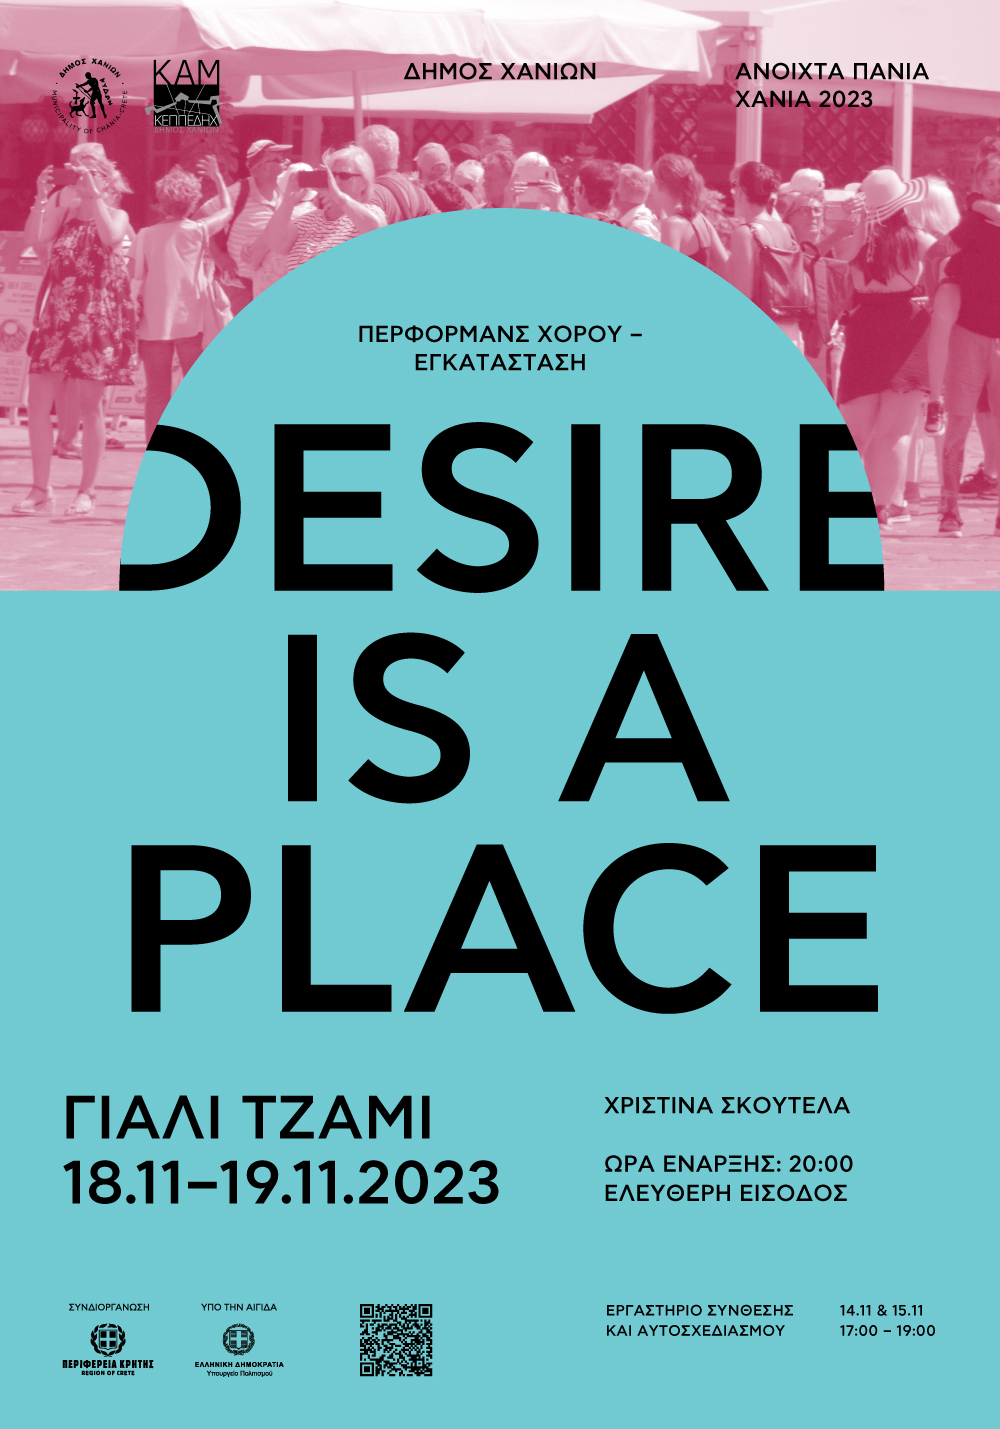 Ανοιχτά Πανιά 2023 – Desire is a place